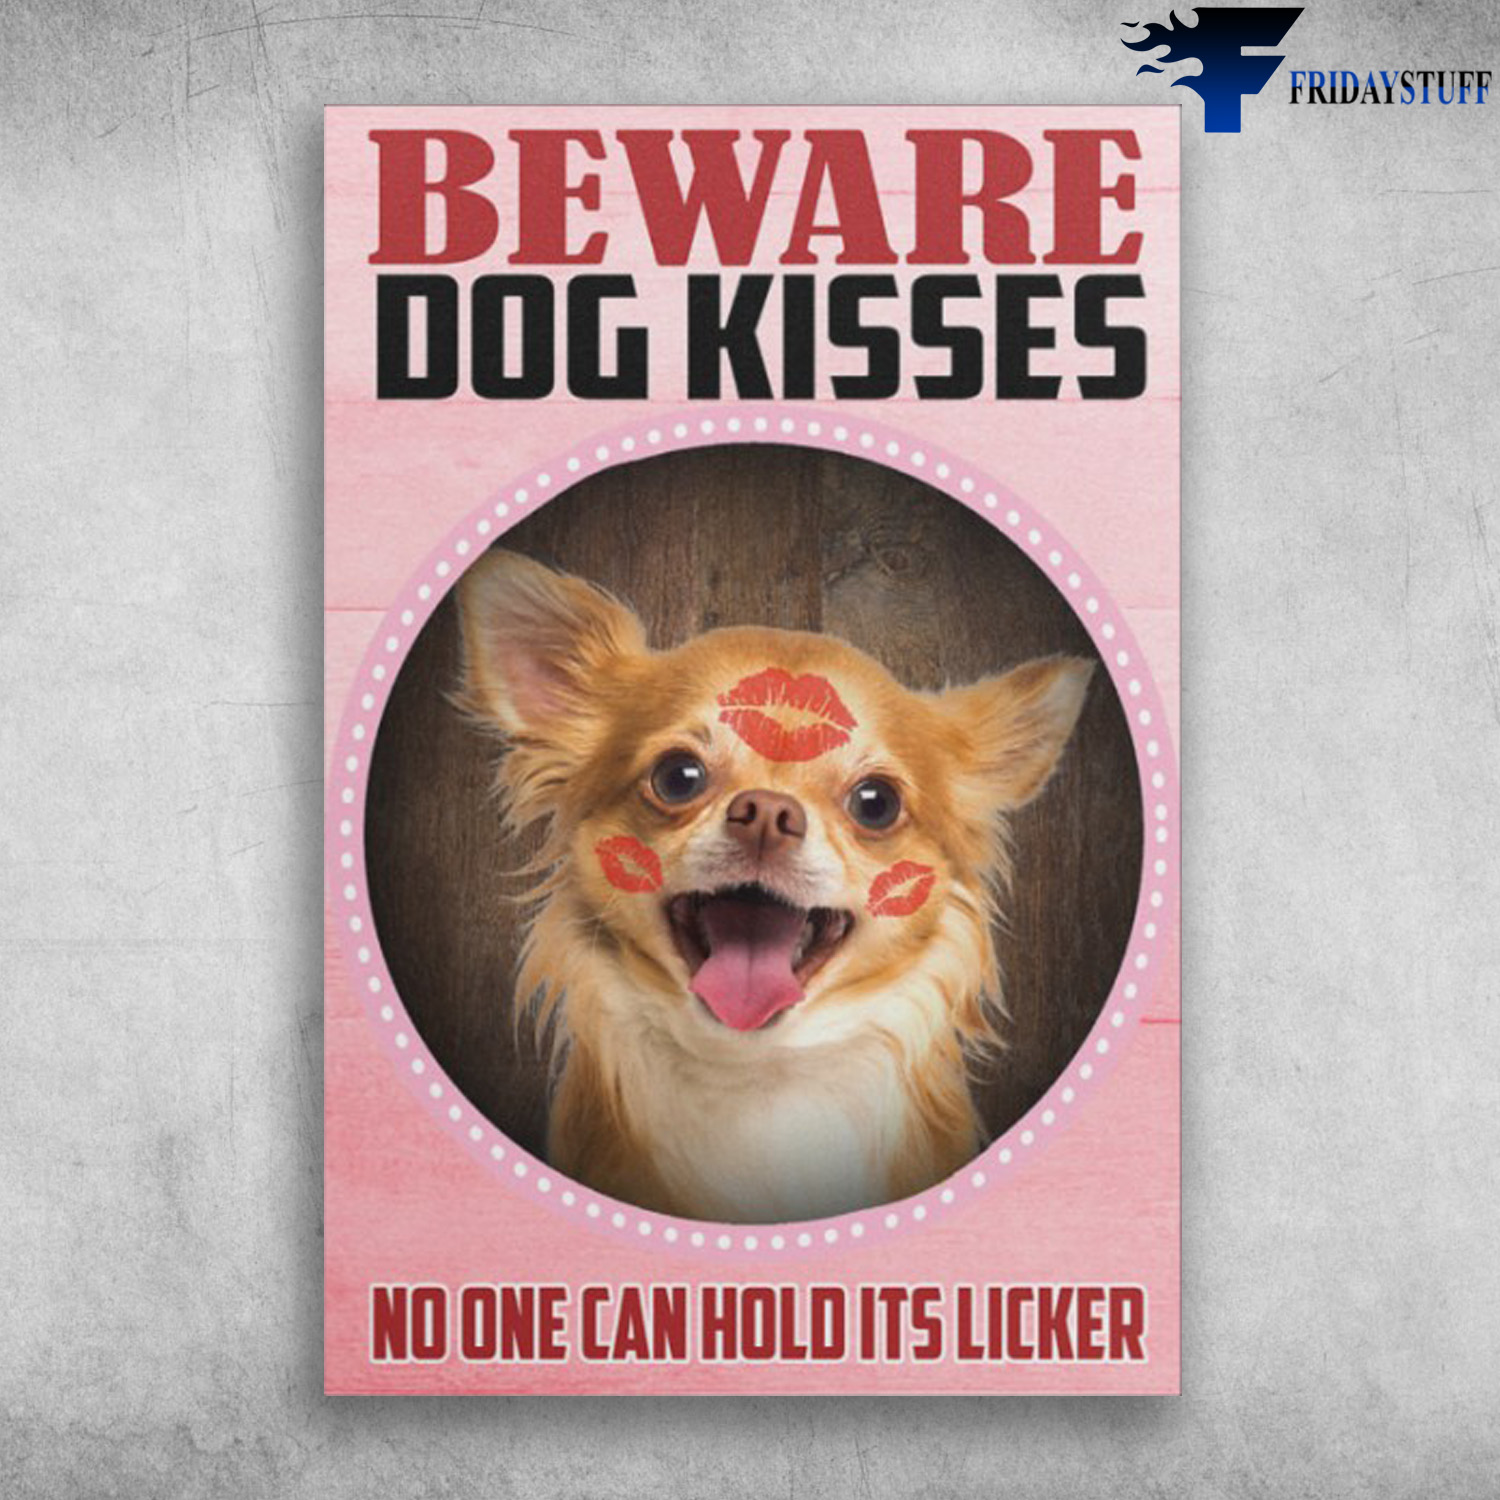 Chihuahua Dog - Beware Dog Kisses, No One Can Hold Its Licker